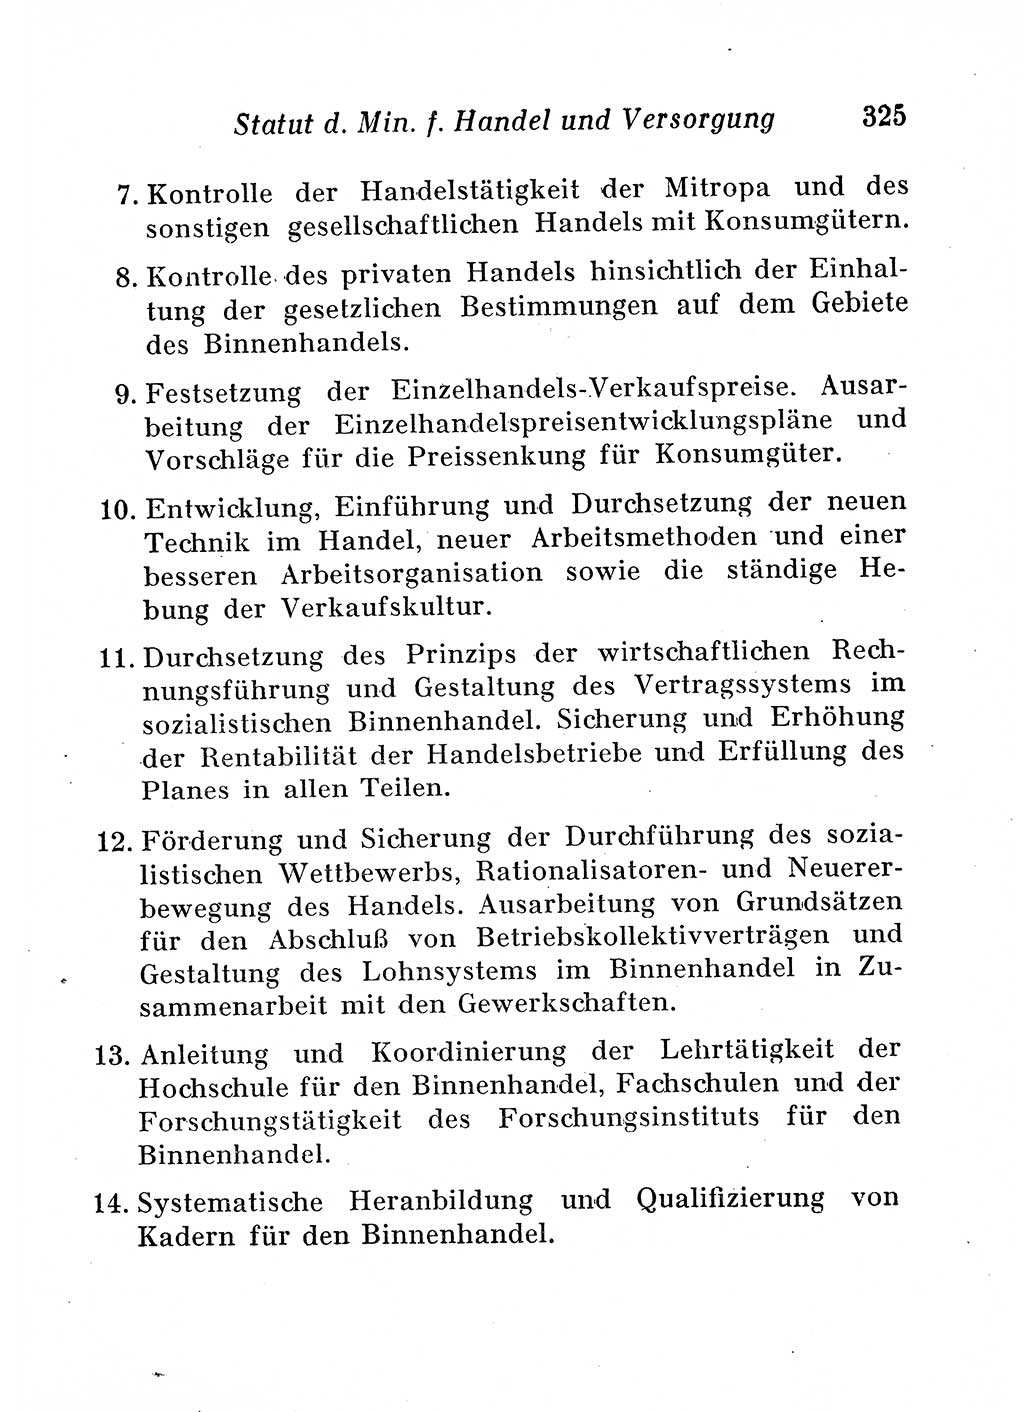 Staats- und verwaltungsrechtliche Gesetze der Deutschen Demokratischen Republik (DDR) 1958, Seite 325 (StVerwR Ges. DDR 1958, S. 325)